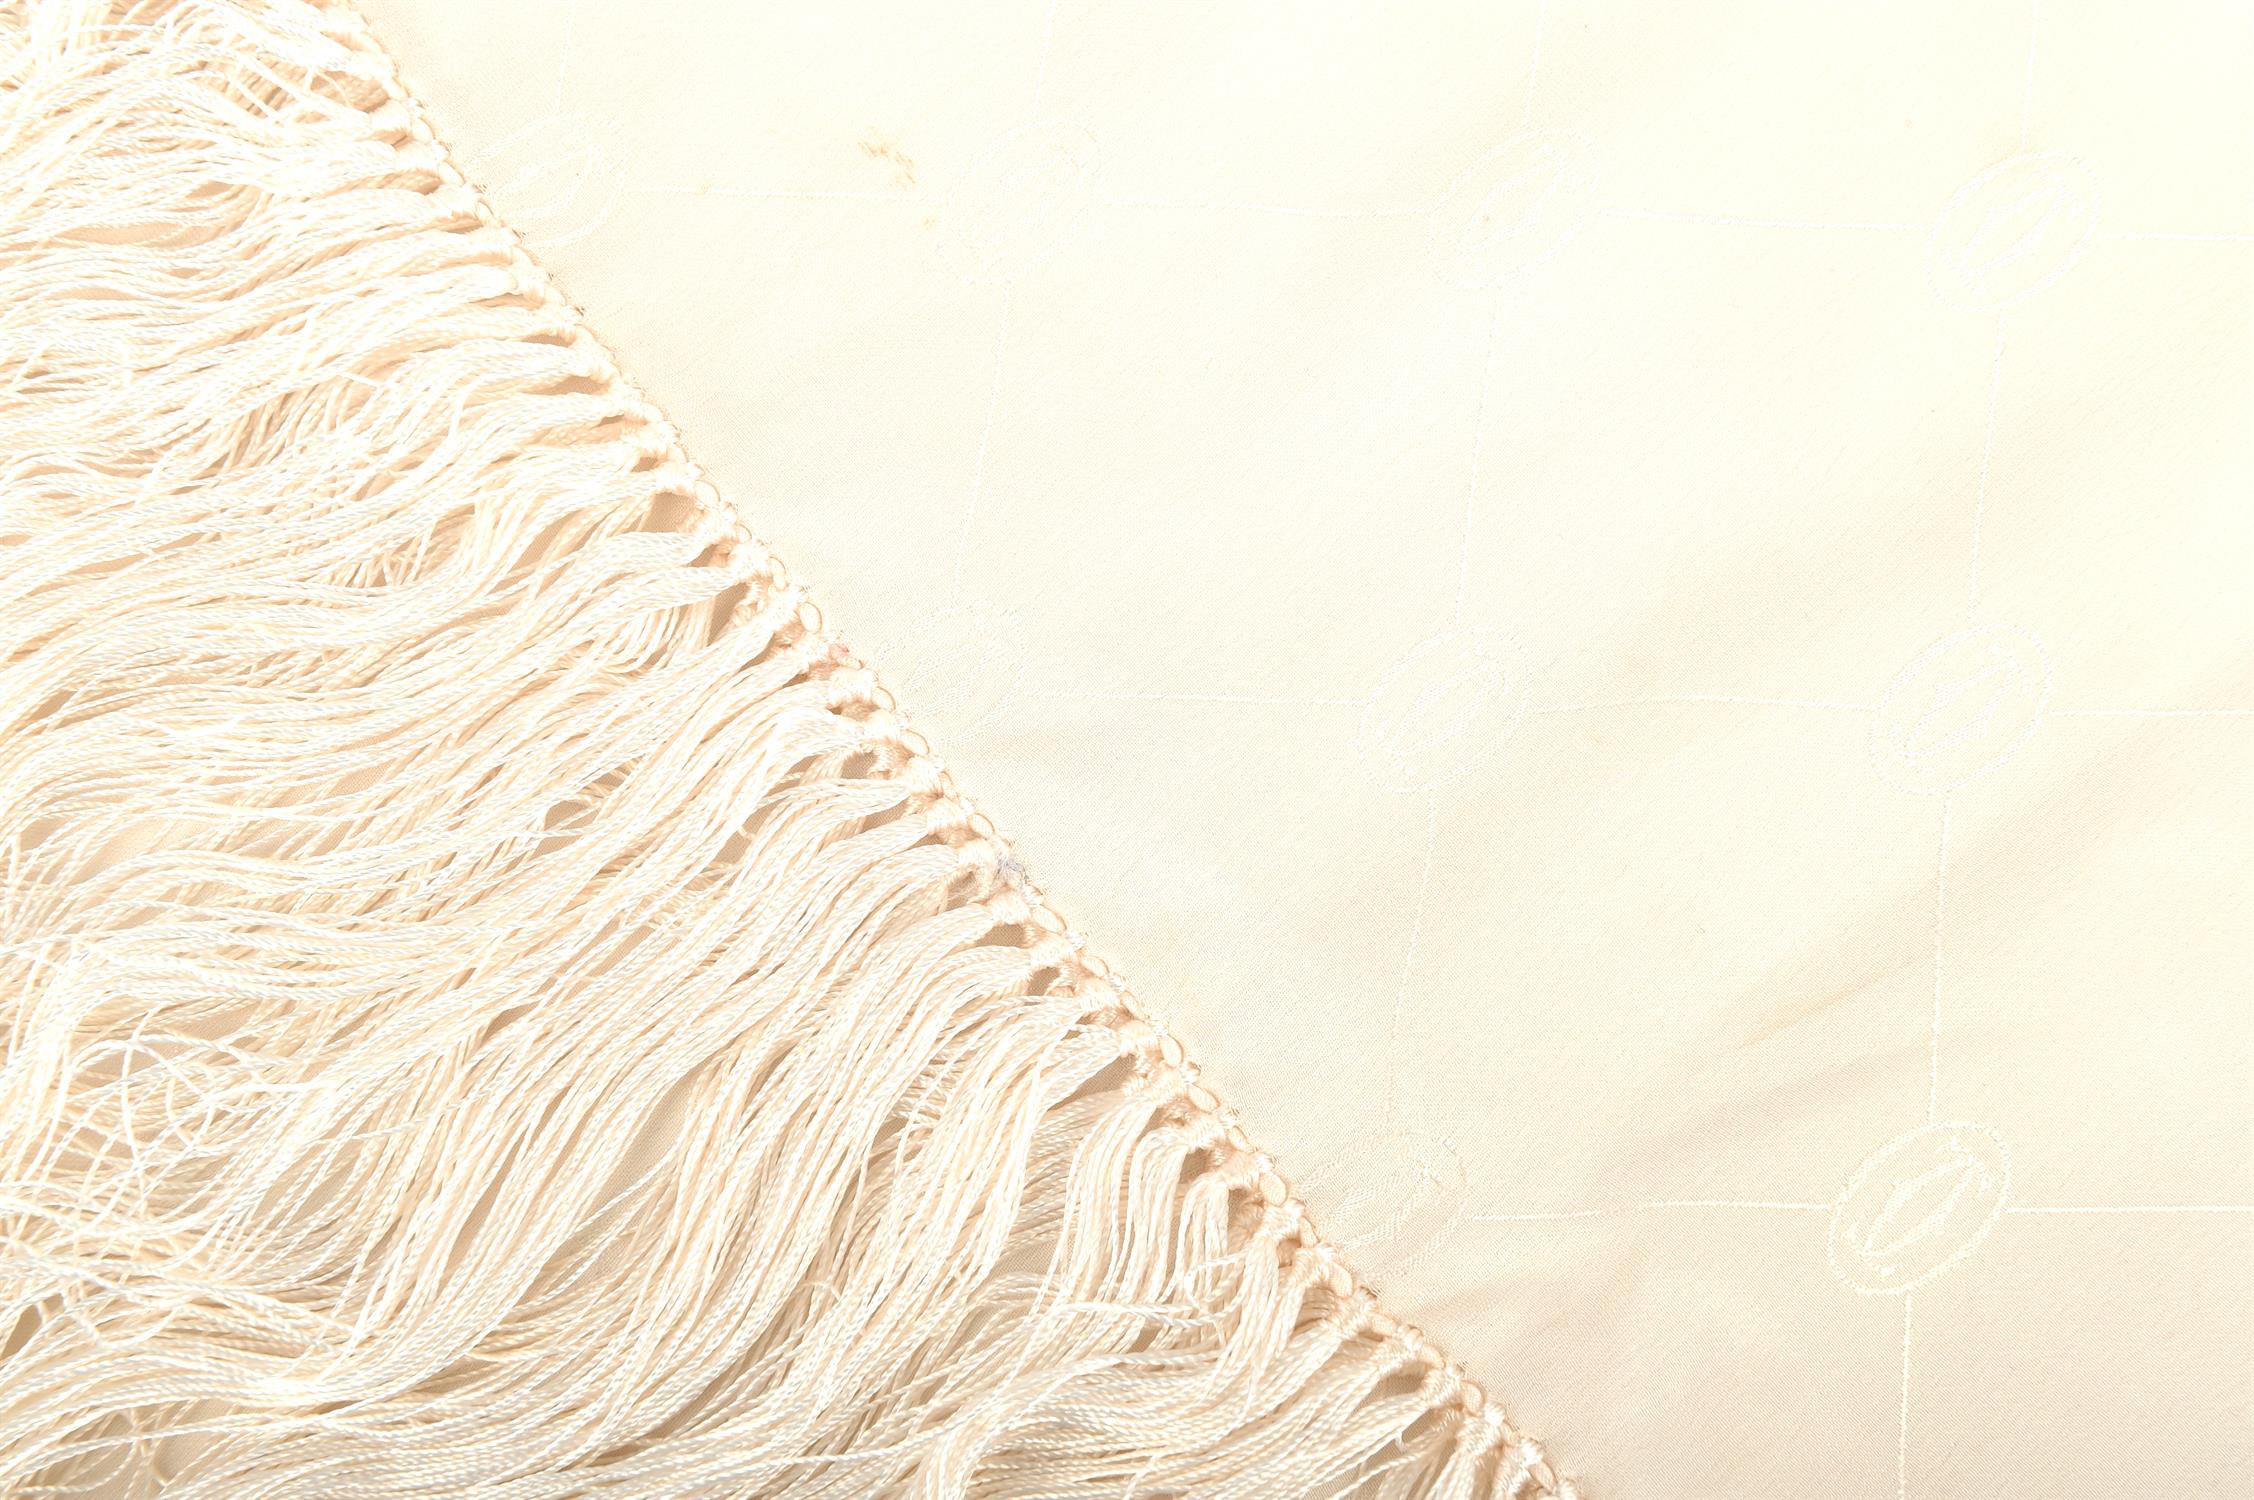 CARTIER LES MUST DE CARTIER gentleman's cream silk embossed evening scarf with fringe 90cm x 40cm - Image 3 of 3